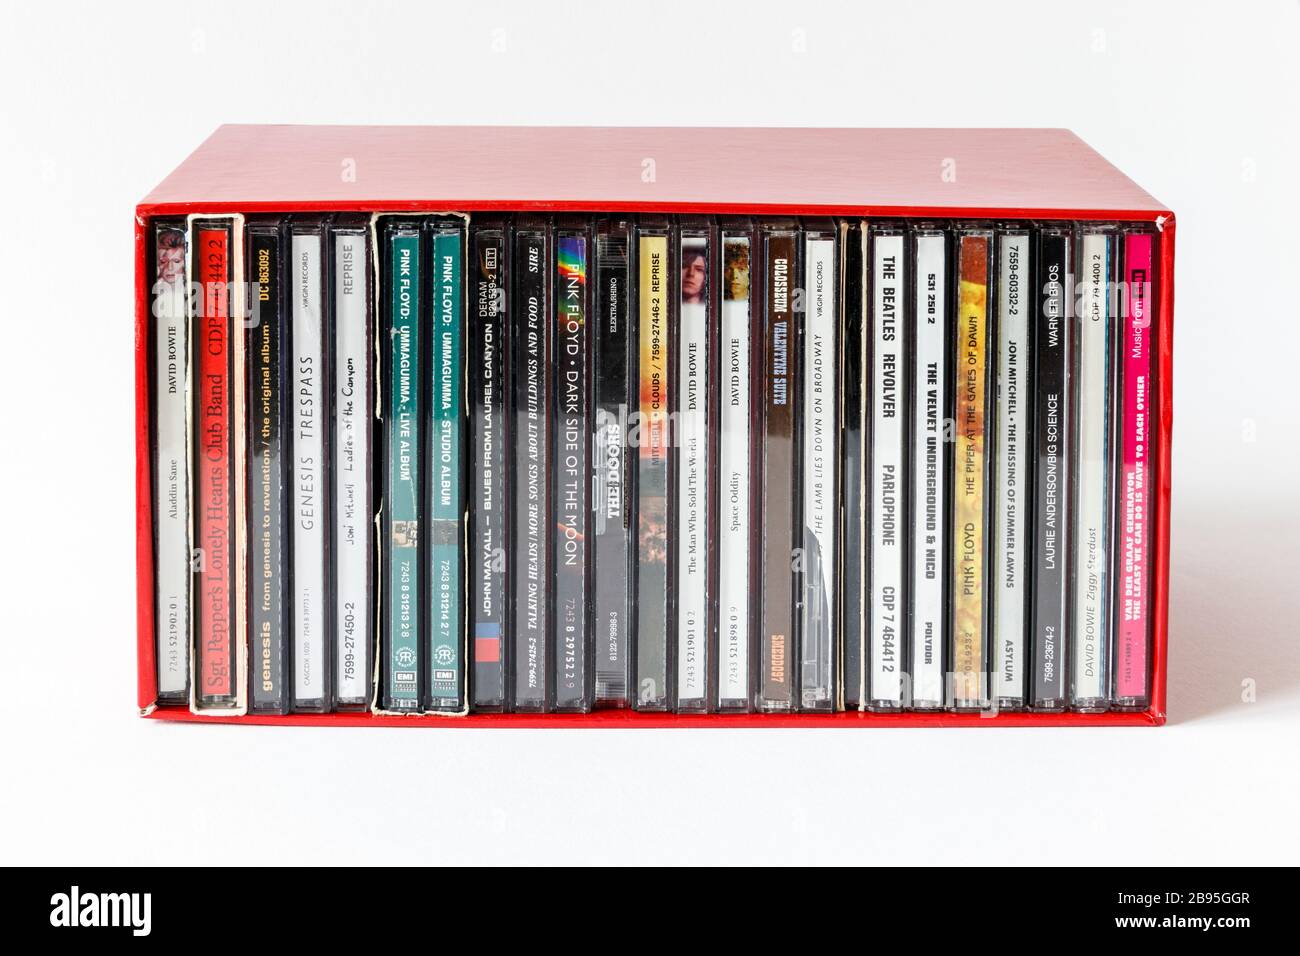 Una scatola rossa contenente CD impilati verticalmente di artisti degli anni '60 e '70, titoli visibili sulle spine Foto Stock